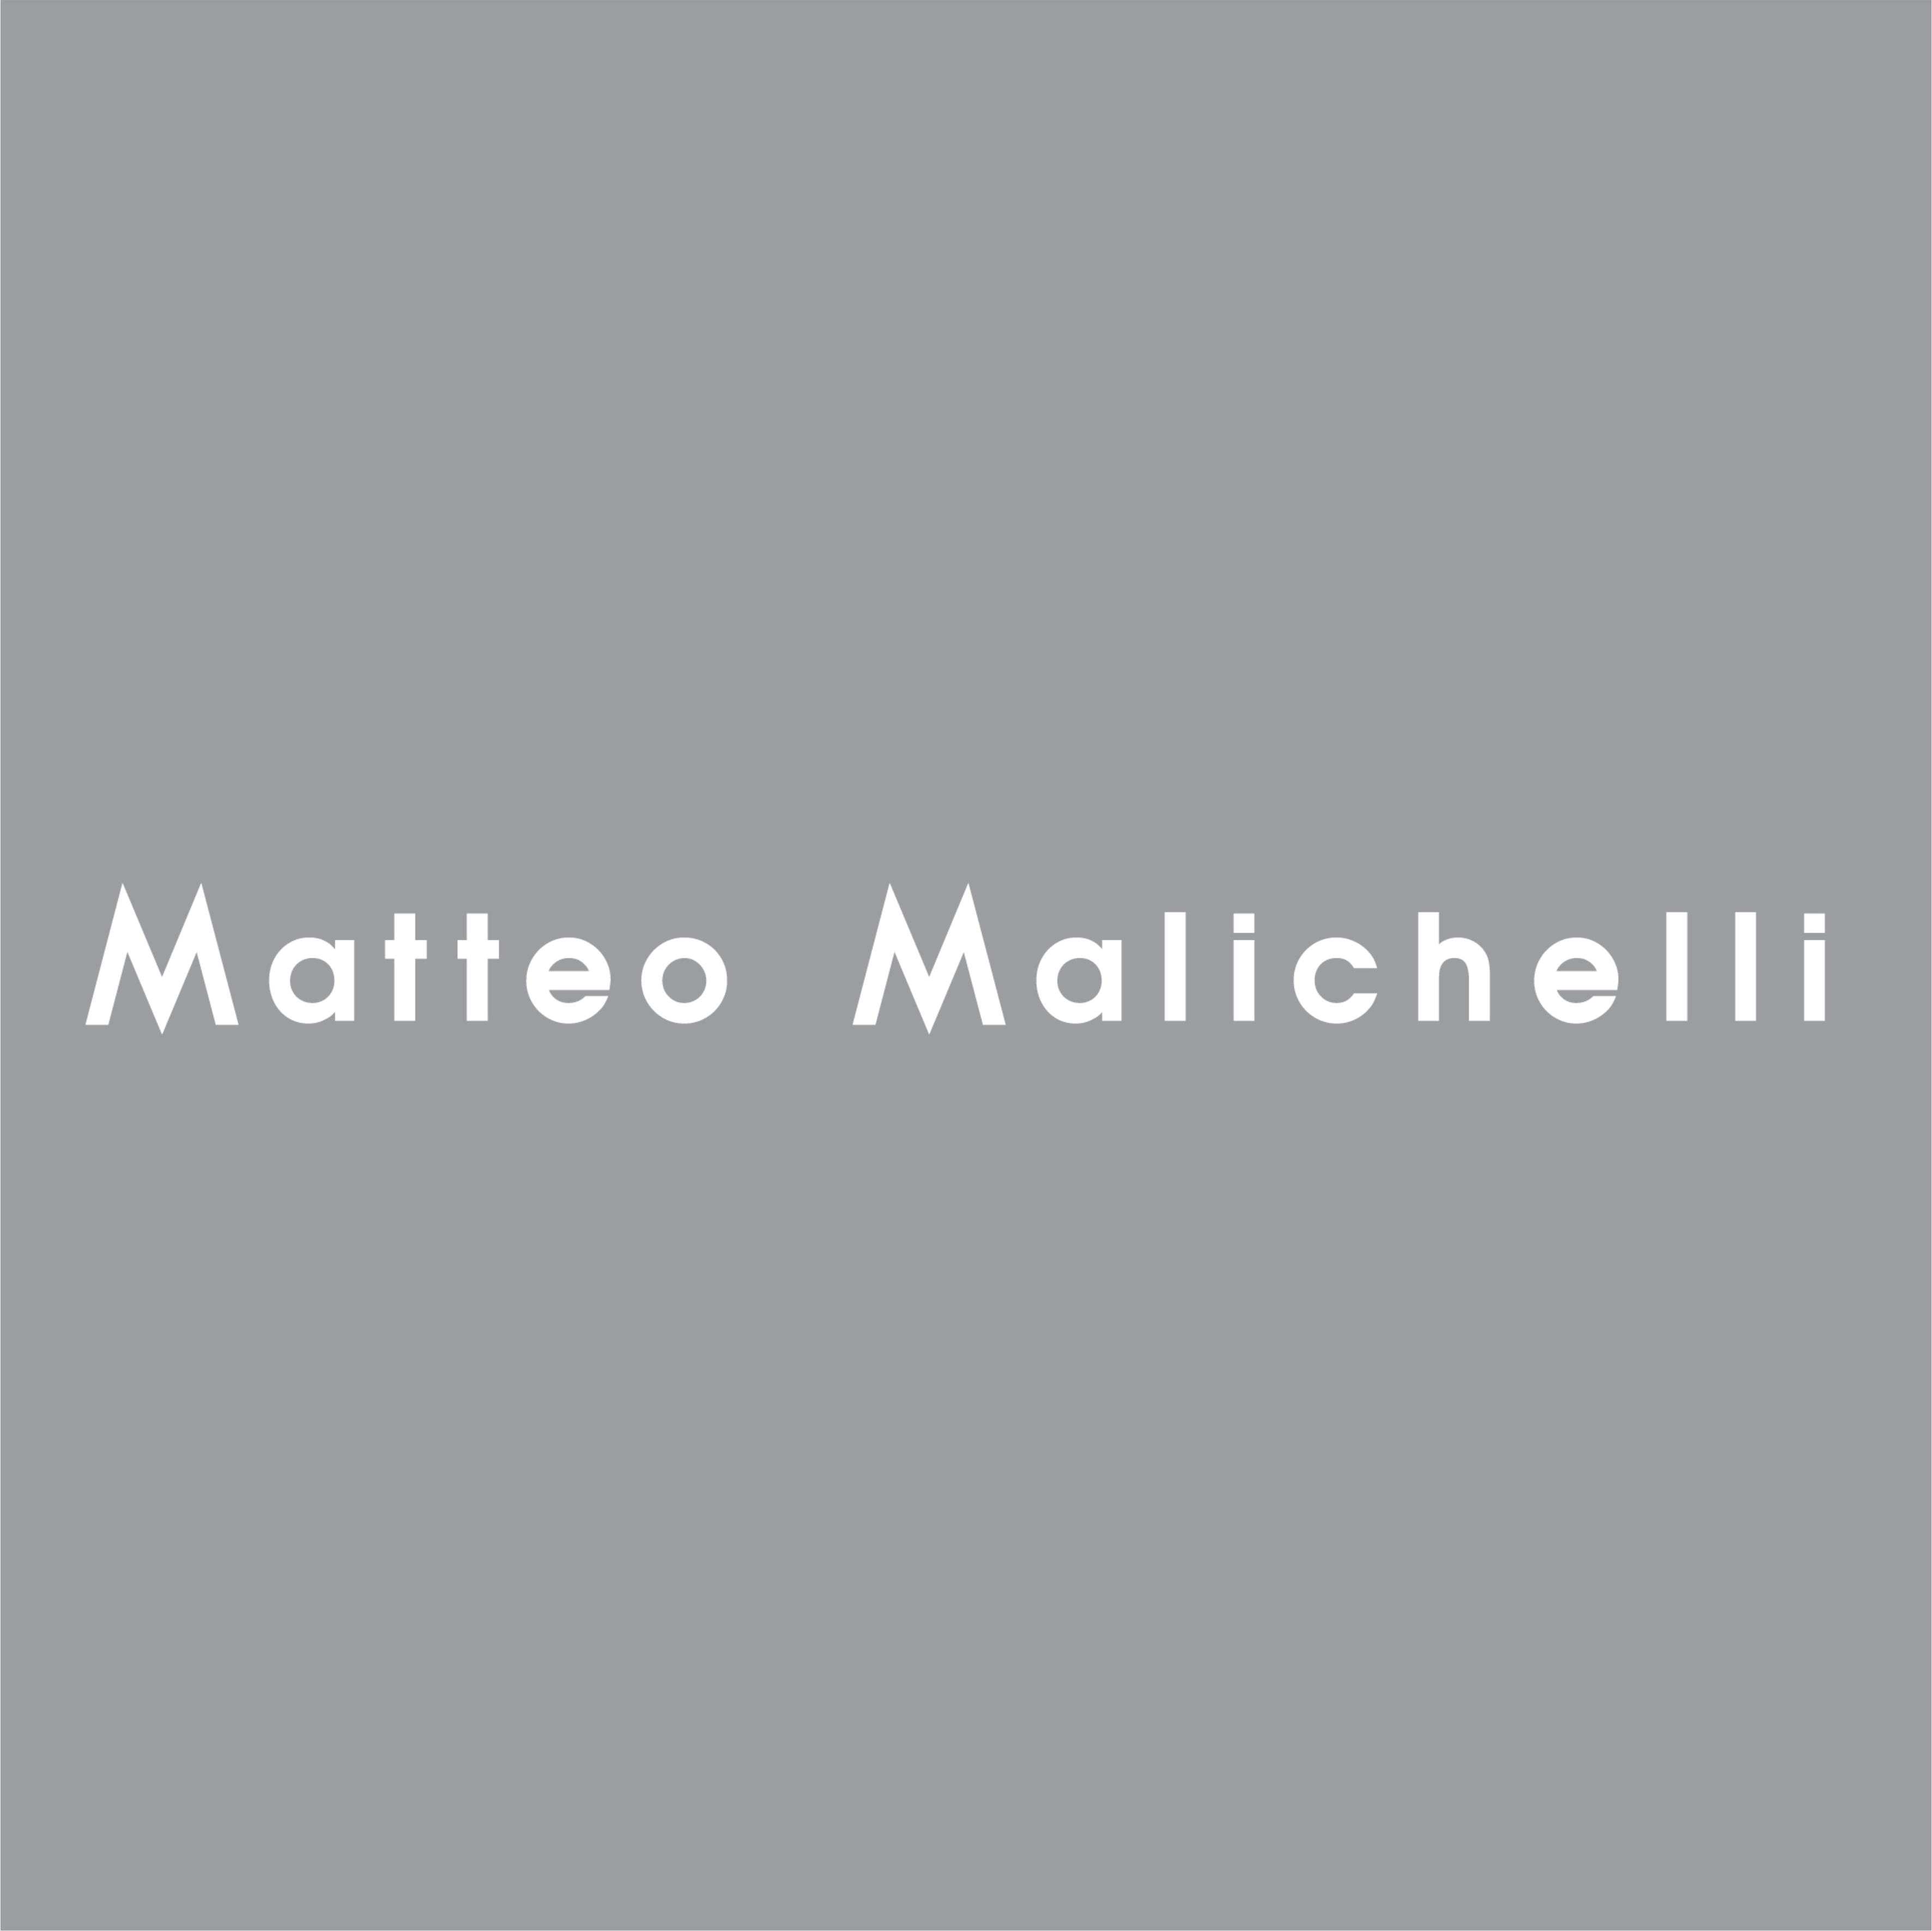 Matteo Malichelli